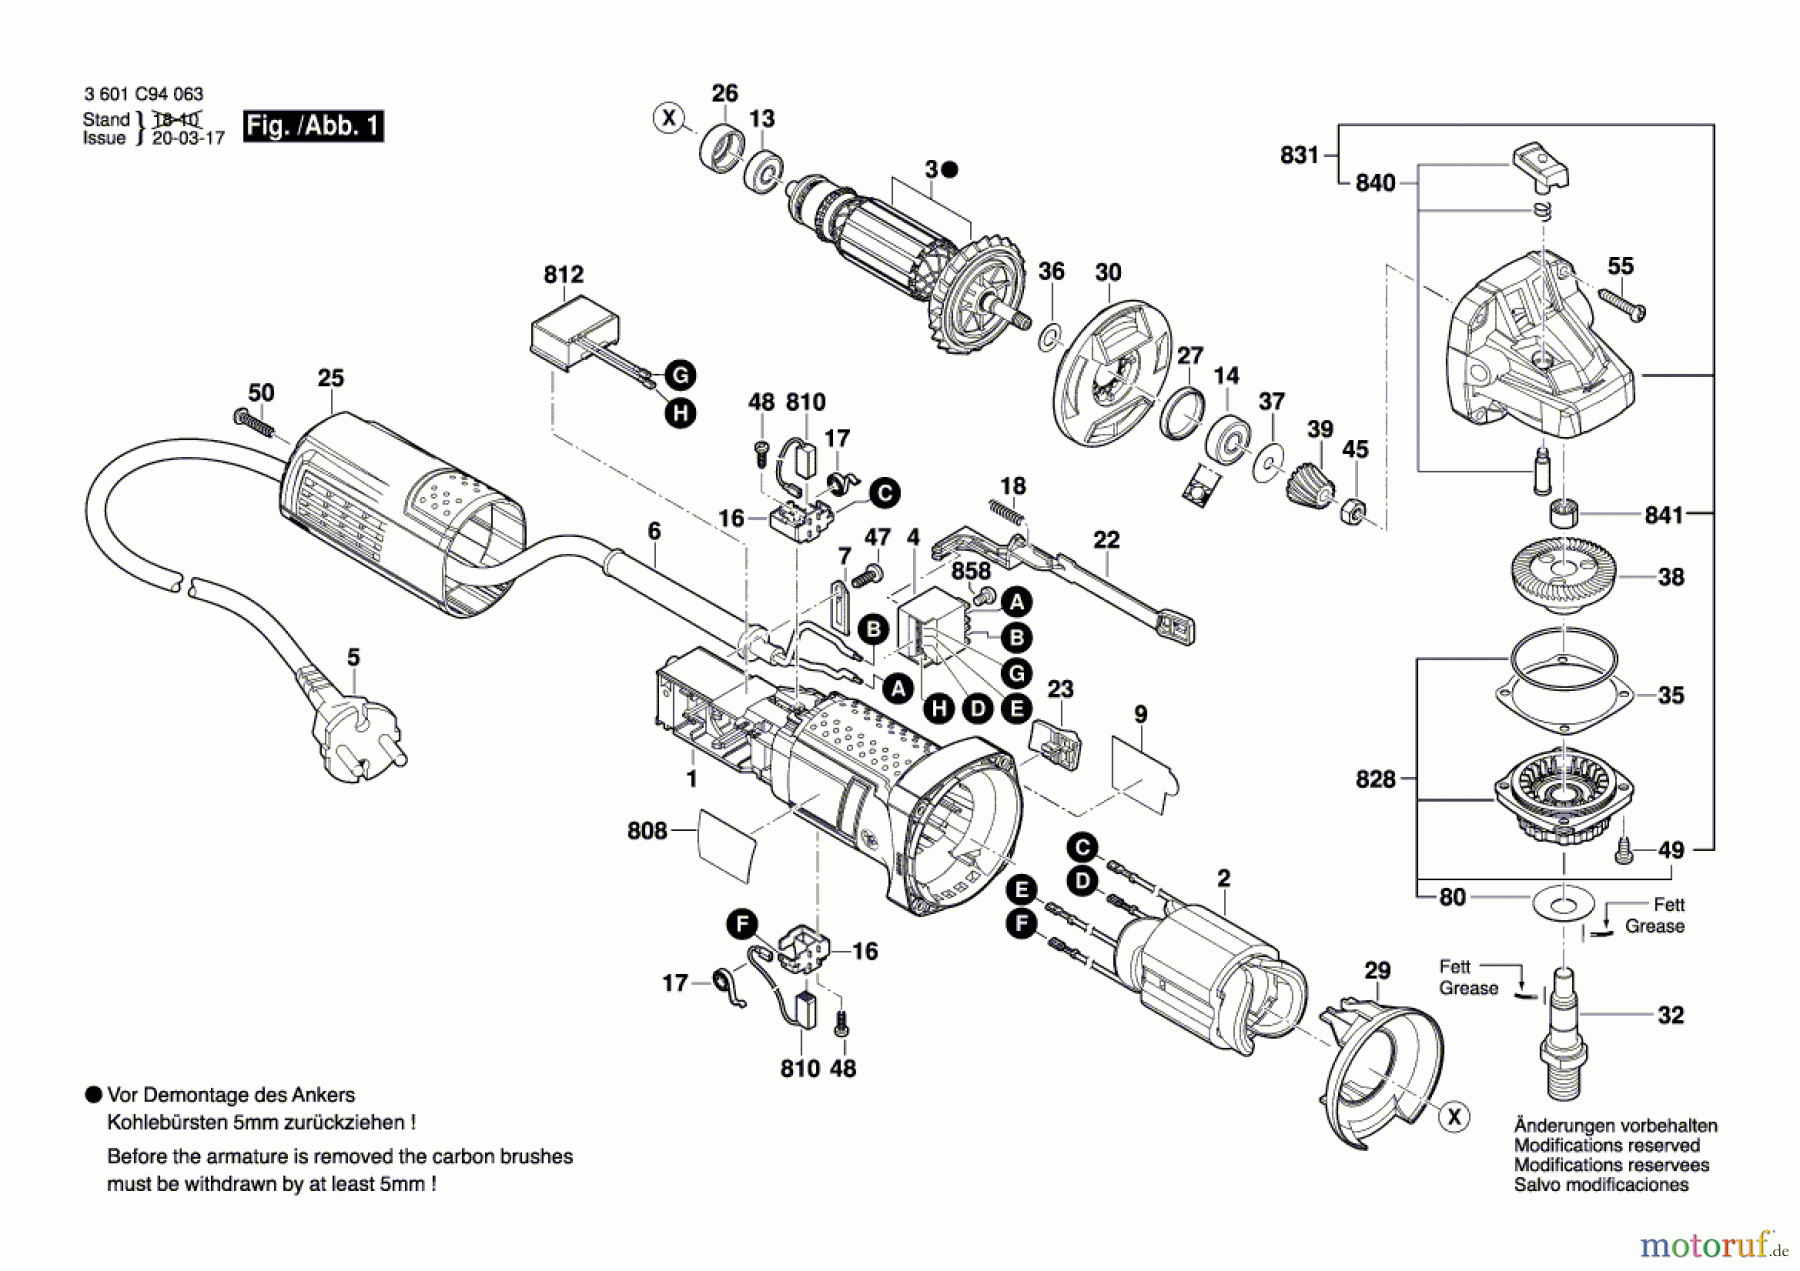  Bosch Werkzeug Winkelschleifer GWS 750 Seite 1